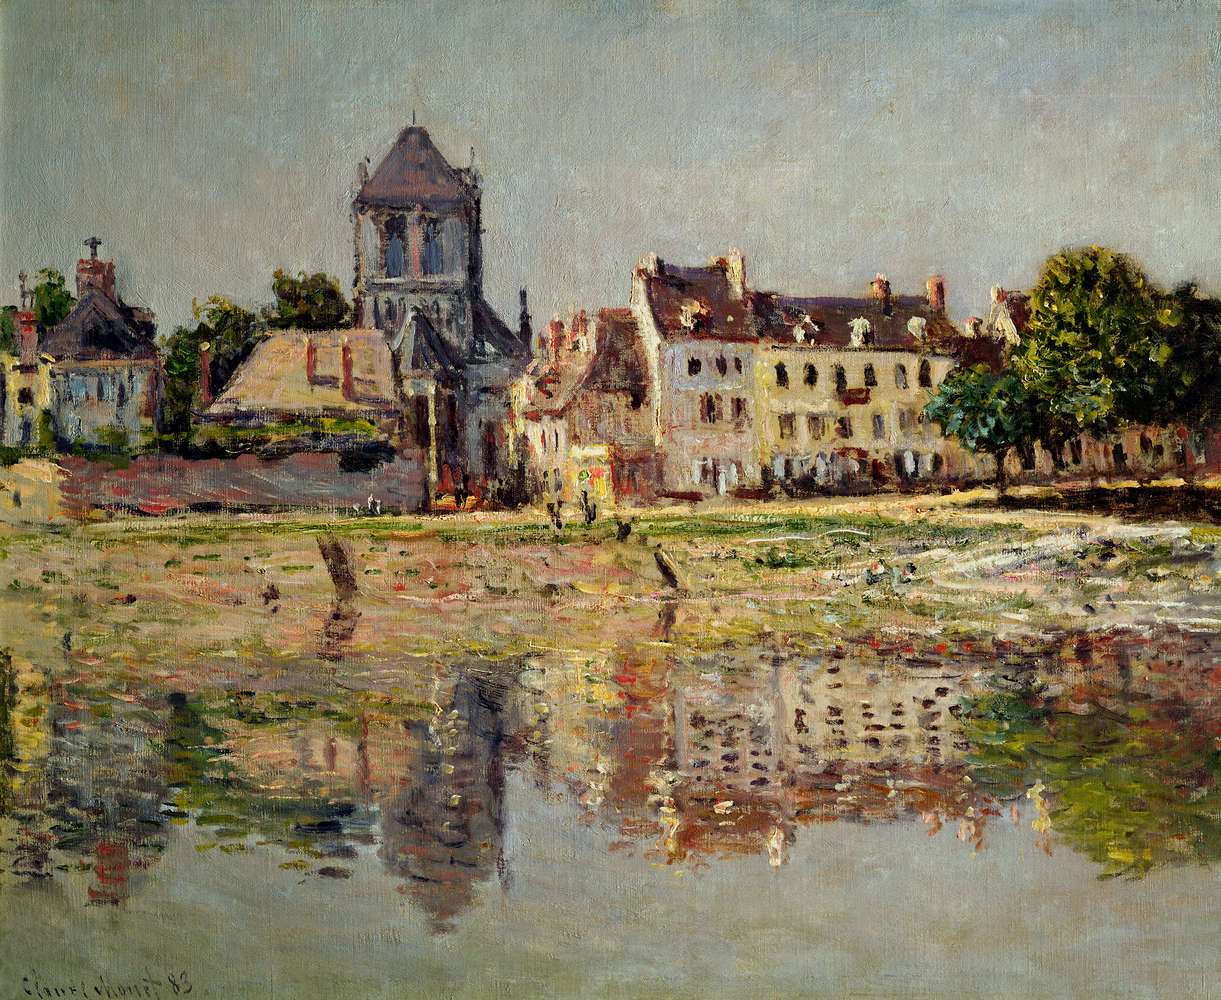             Mural "Junto al río en Vernon" de Claude Monet
        